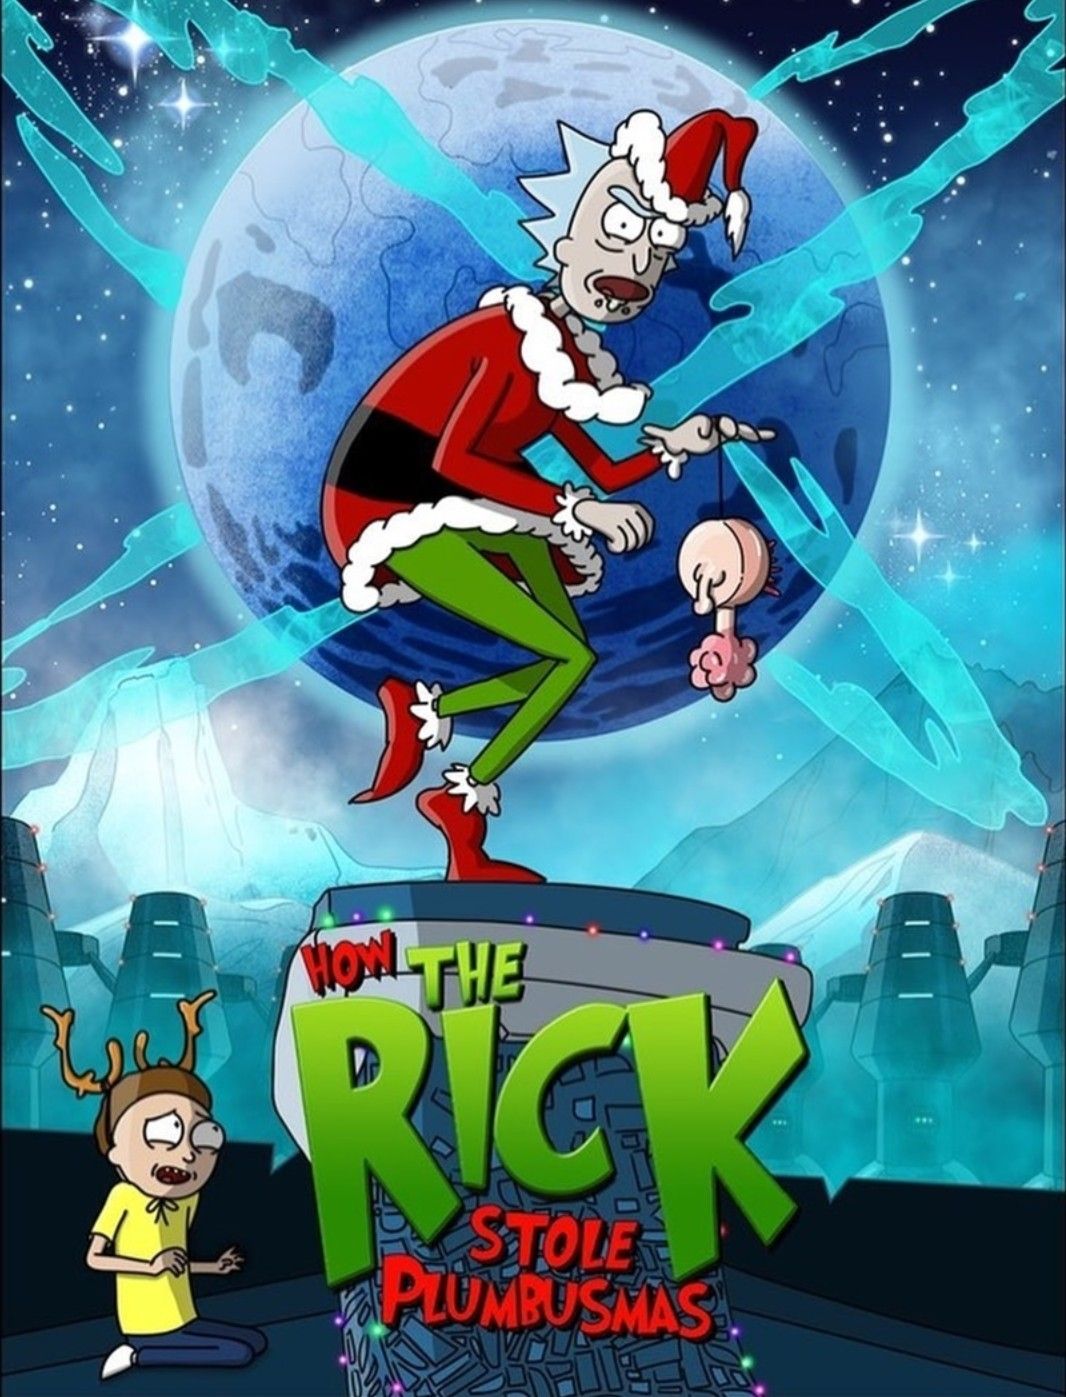 Rick And Morty Christmas Wallpapers